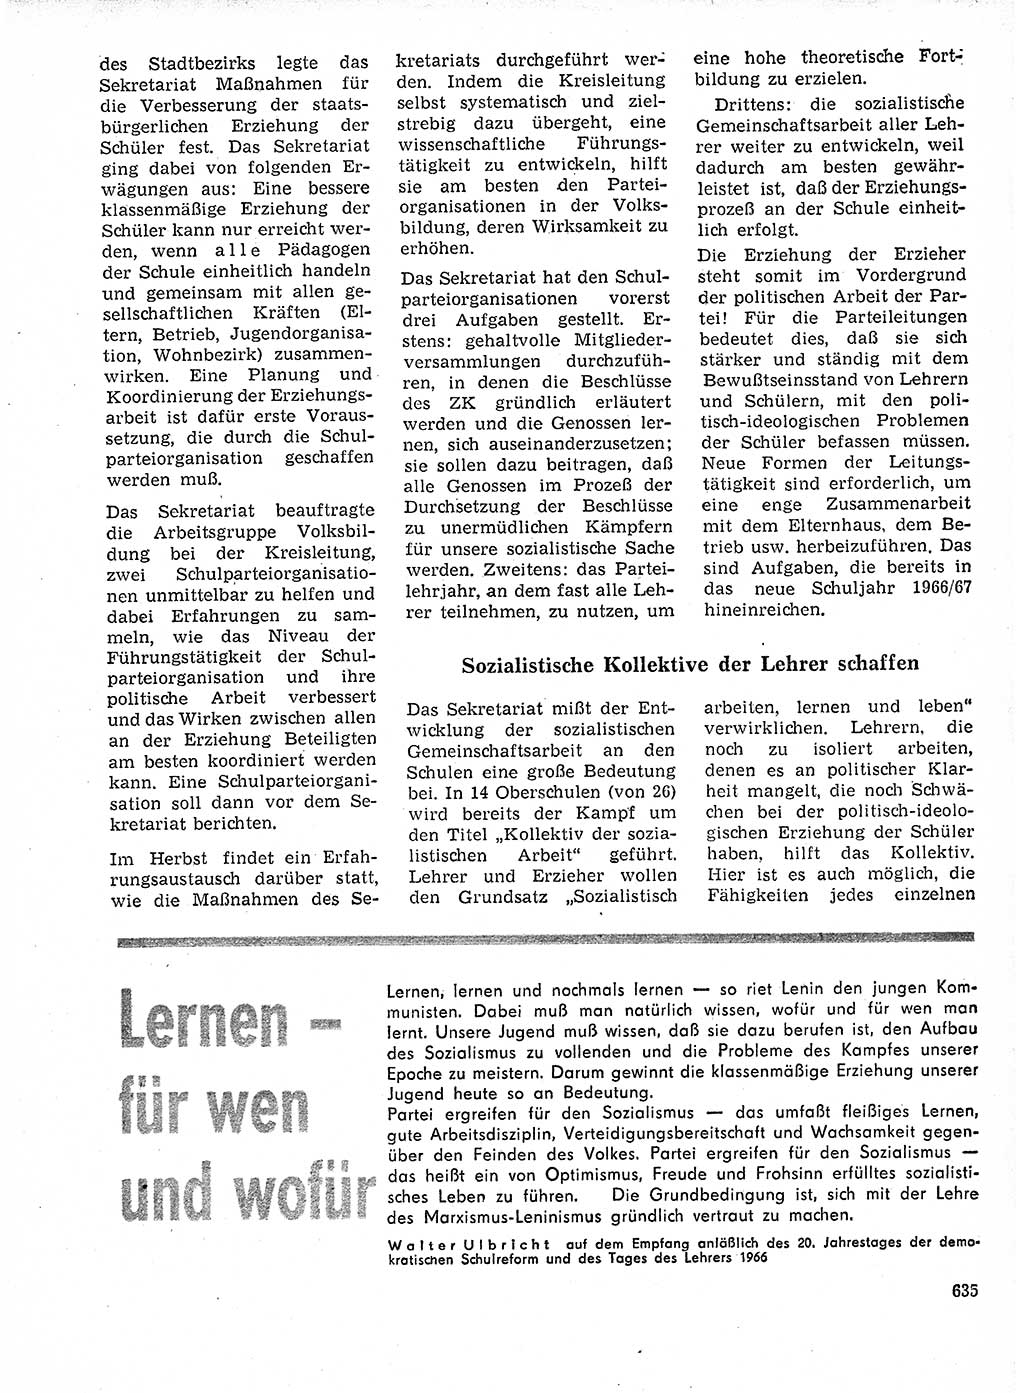 Neuer Weg (NW), Organ des Zentralkomitees (ZK) der SED (Sozialistische Einheitspartei Deutschlands) für Fragen des Parteilebens, 21. Jahrgang [Deutsche Demokratische Republik (DDR)] 1966, Seite 635 (NW ZK SED DDR 1966, S. 635)